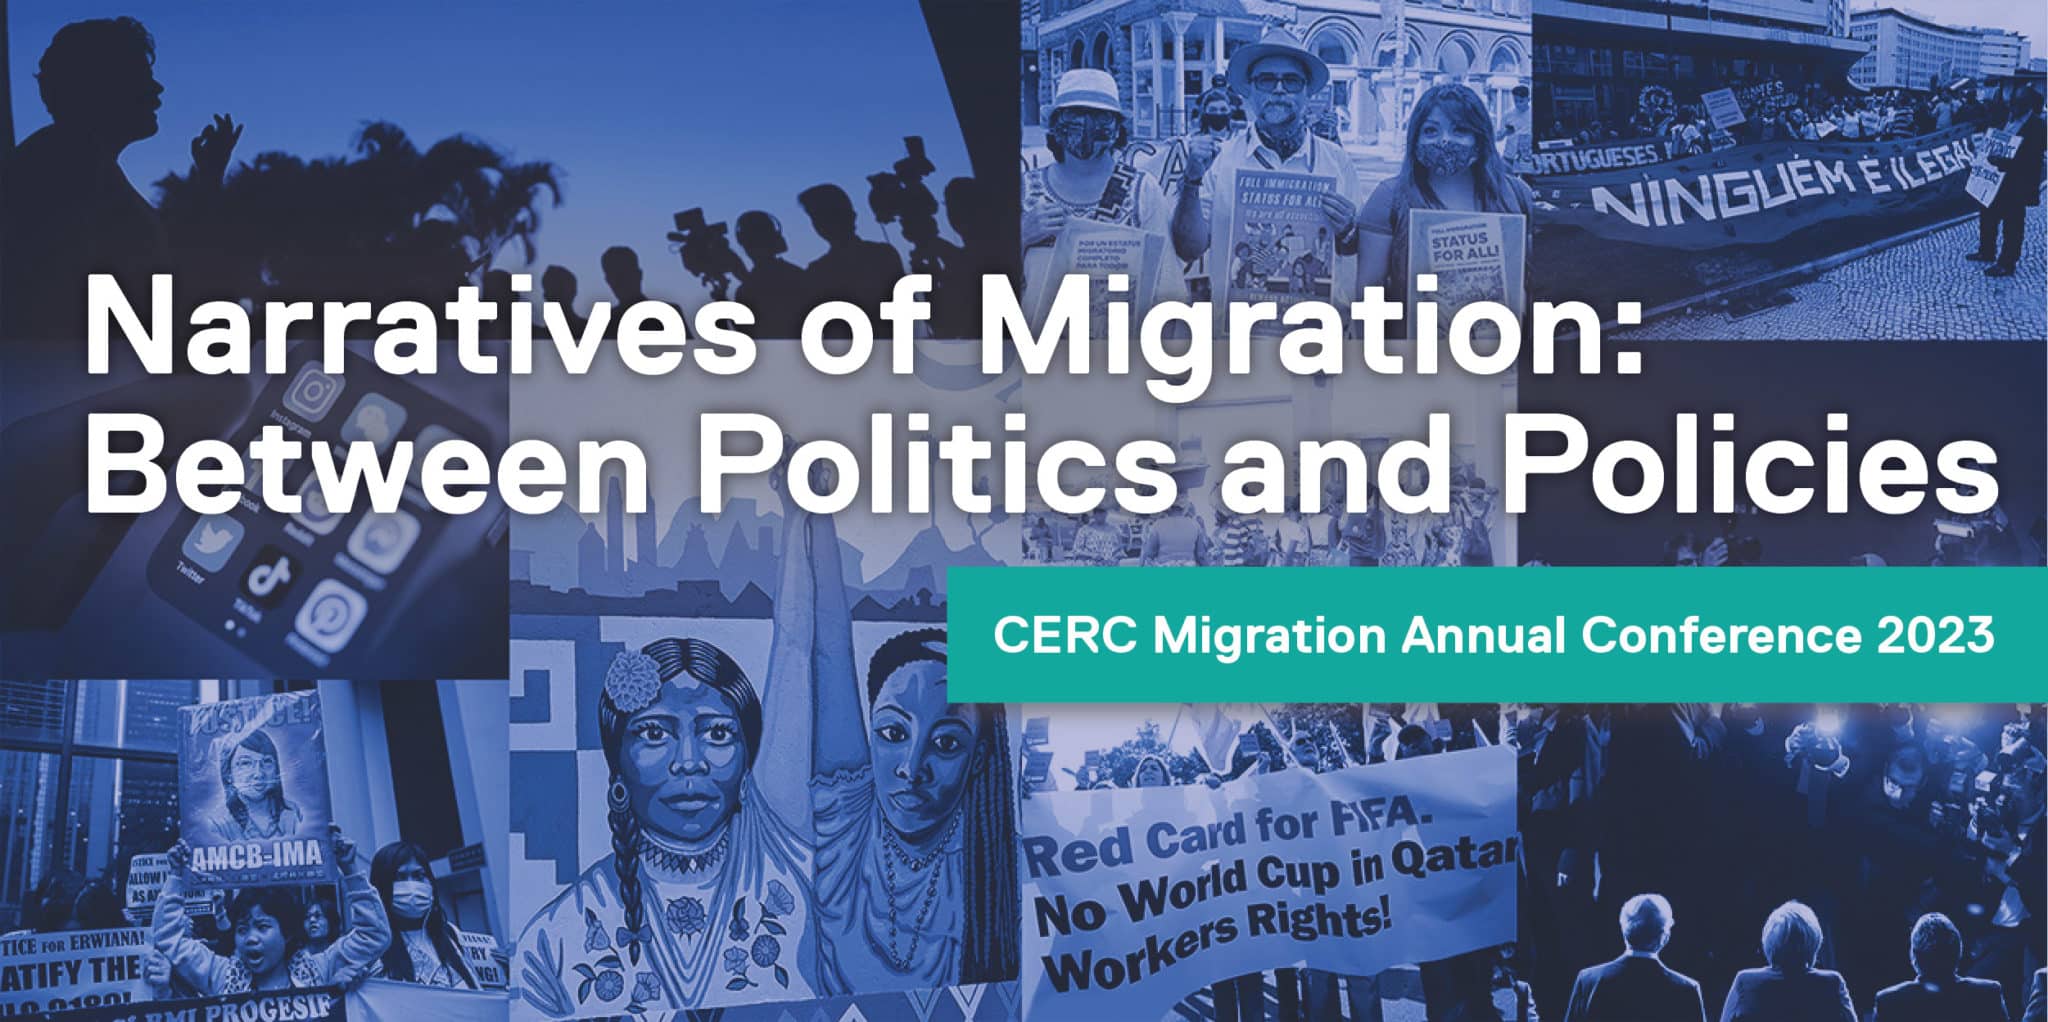 Plakat für die CERC Jahreskonferenz "Narratives of Migration"